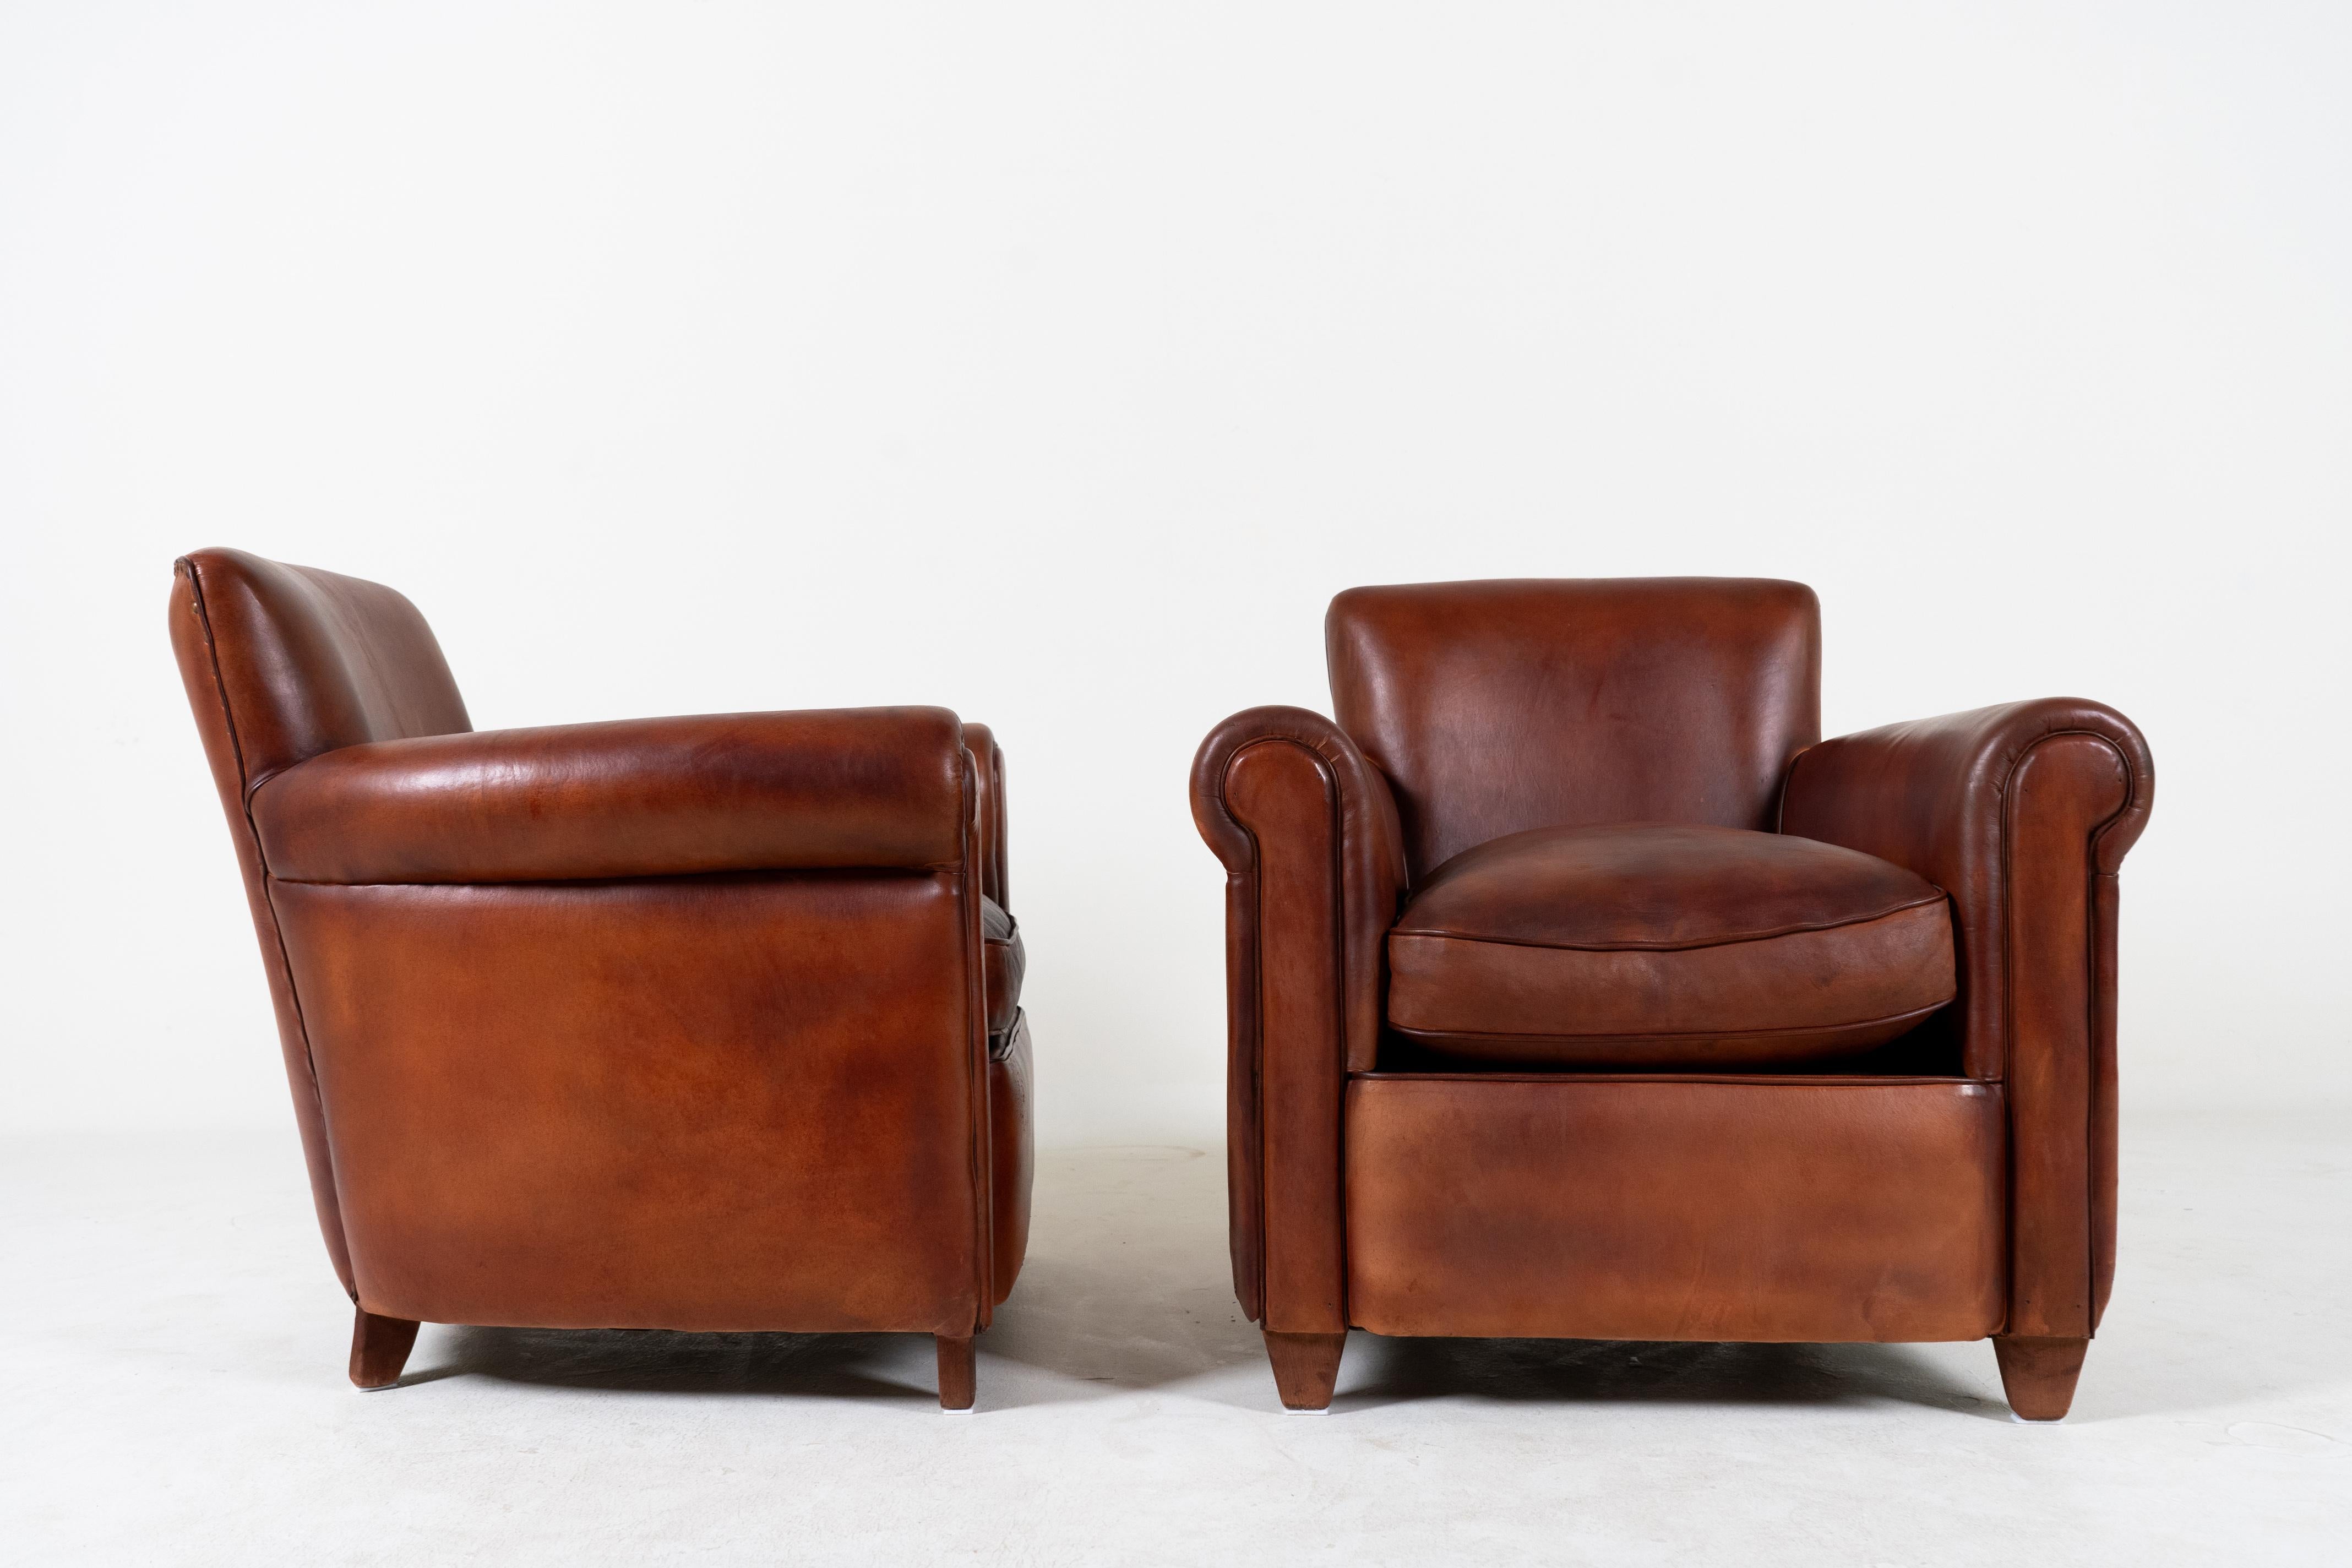 Cette paire de fauteuils charmante et compacte rappelle les designs nautiques français des années 1920 et 1930.  Les chaises ont été conçues à l'origine pour offrir un certain confort aux officiers dans les espaces restreints des navires et des